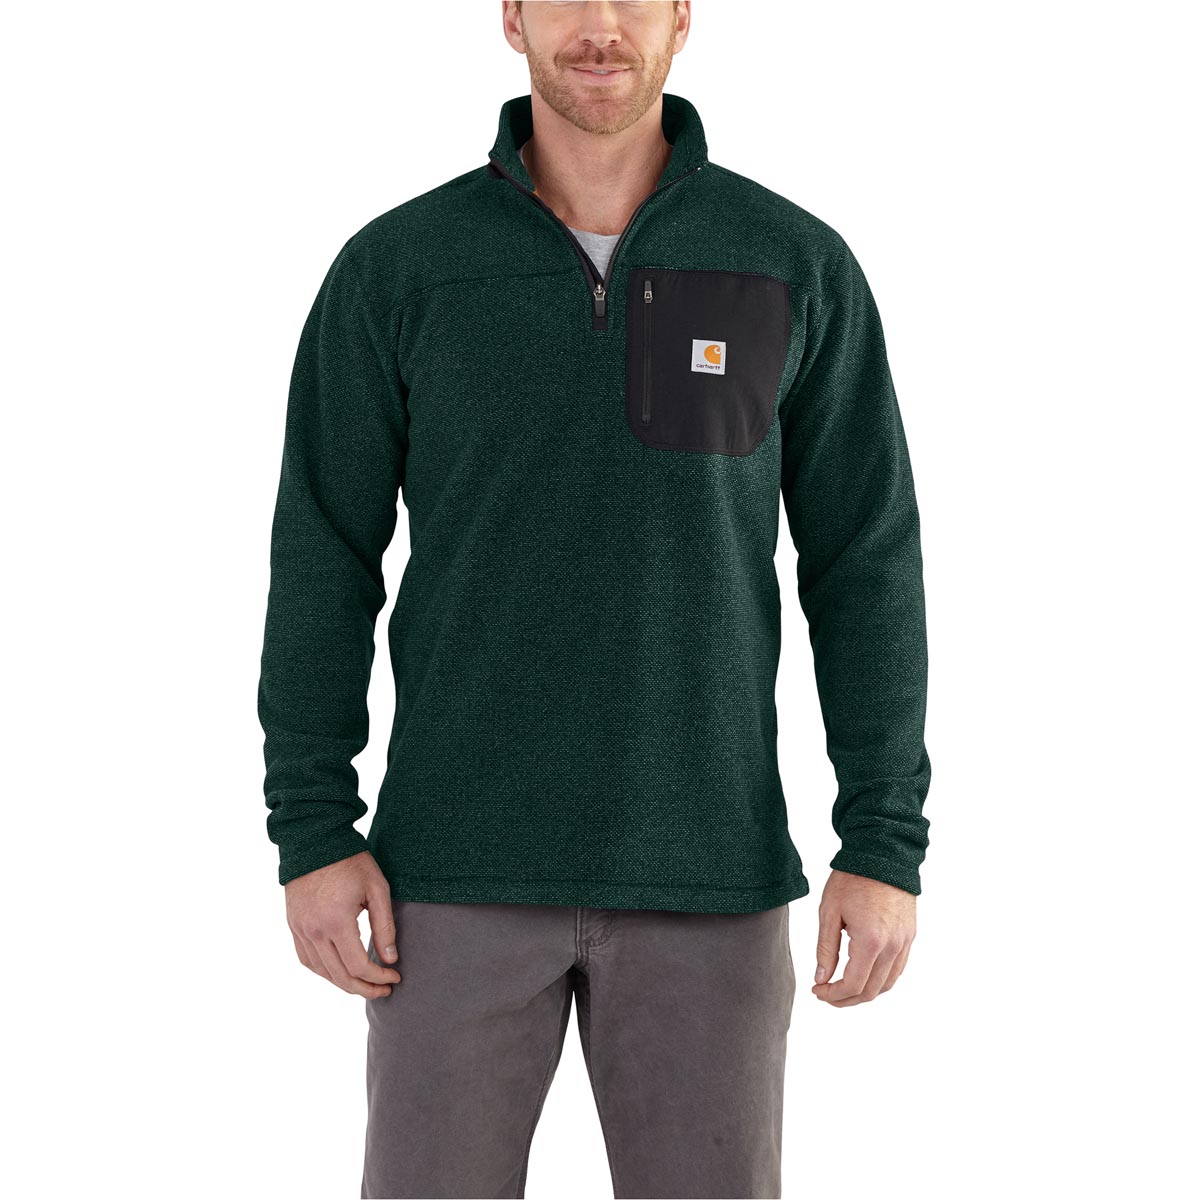 Carhartt Men's Walden Quarter Zip Sweater Fleece